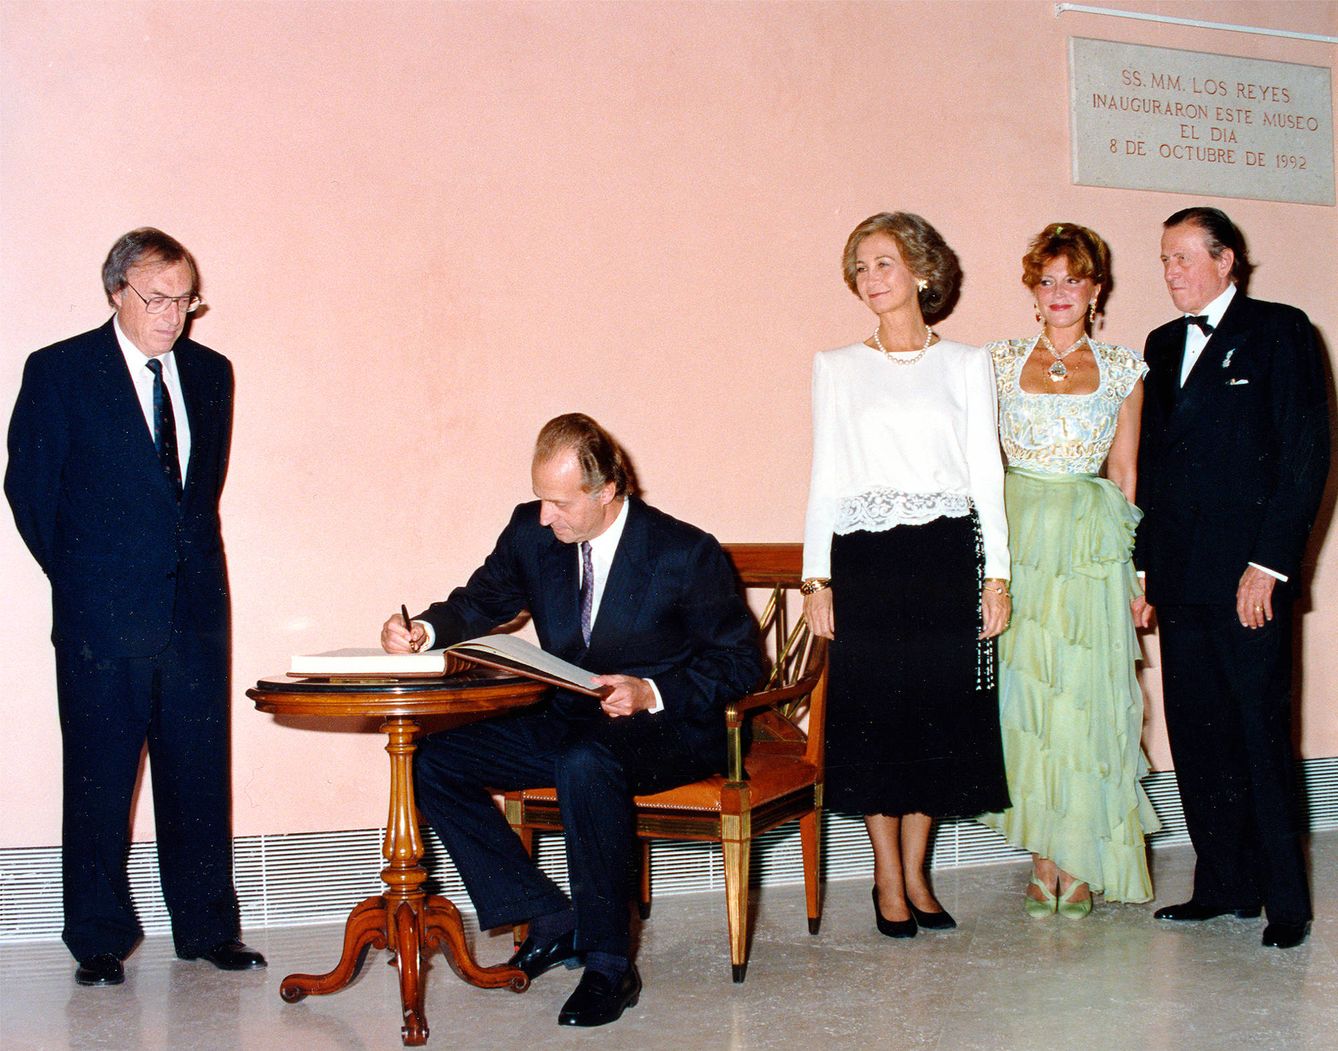  El rey Juan Carlos firma en el libro de visitas durante la inauguración del Thyssen, 8 de octubre de 1992 (Archivo fotográfico baronesa Thyssen-Bornemisza)